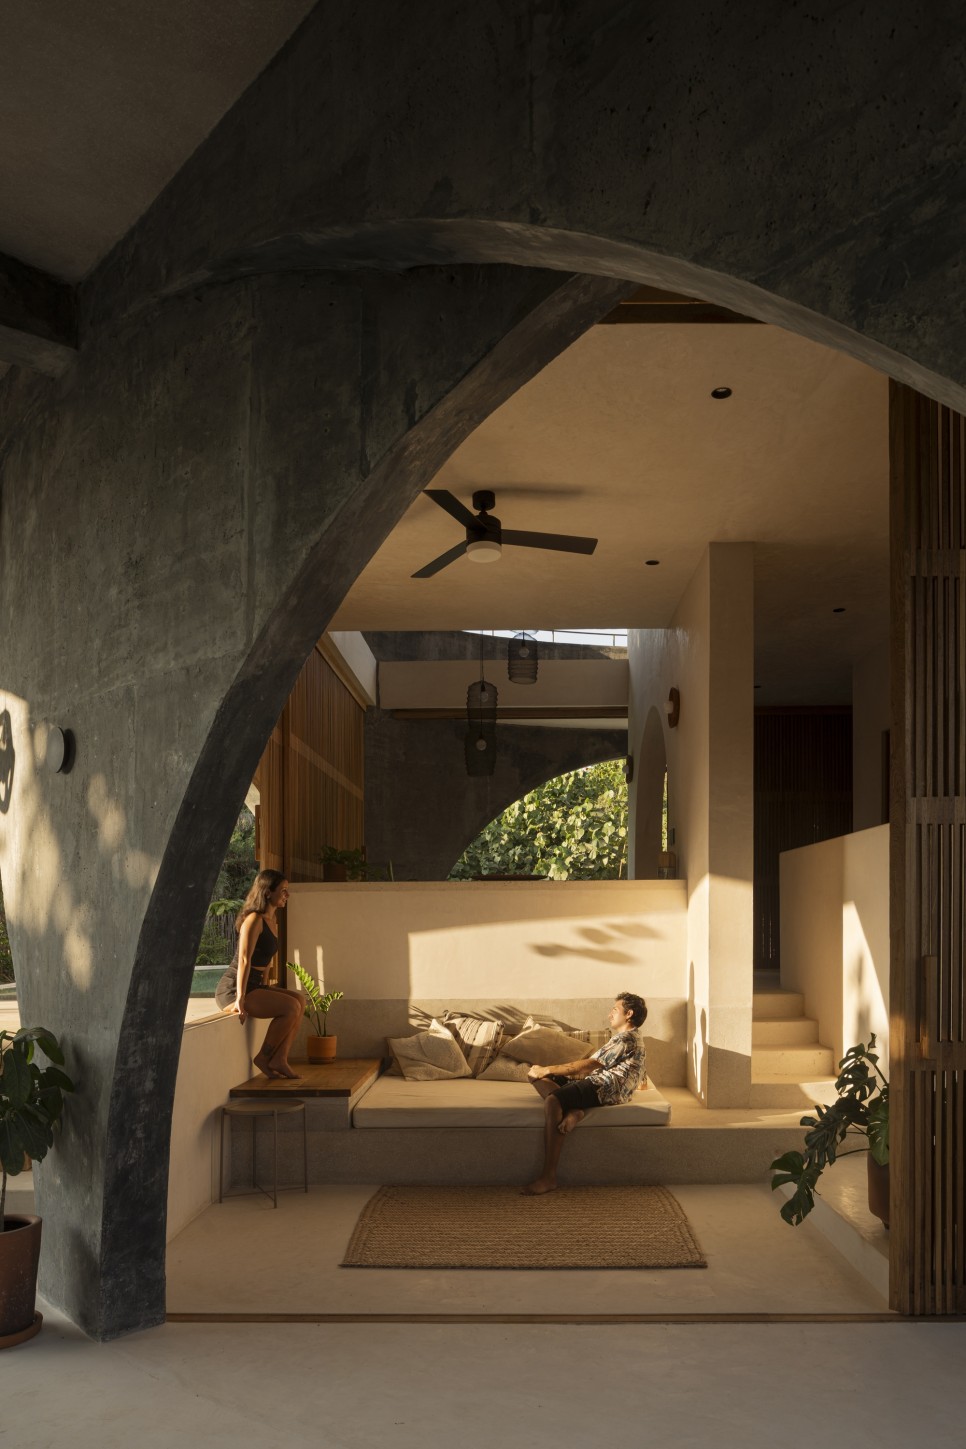 외원내각 & 파도! 풍경과 완벽한 조화를 이룬 고효율 주택, Toro House by Estudio Carroll